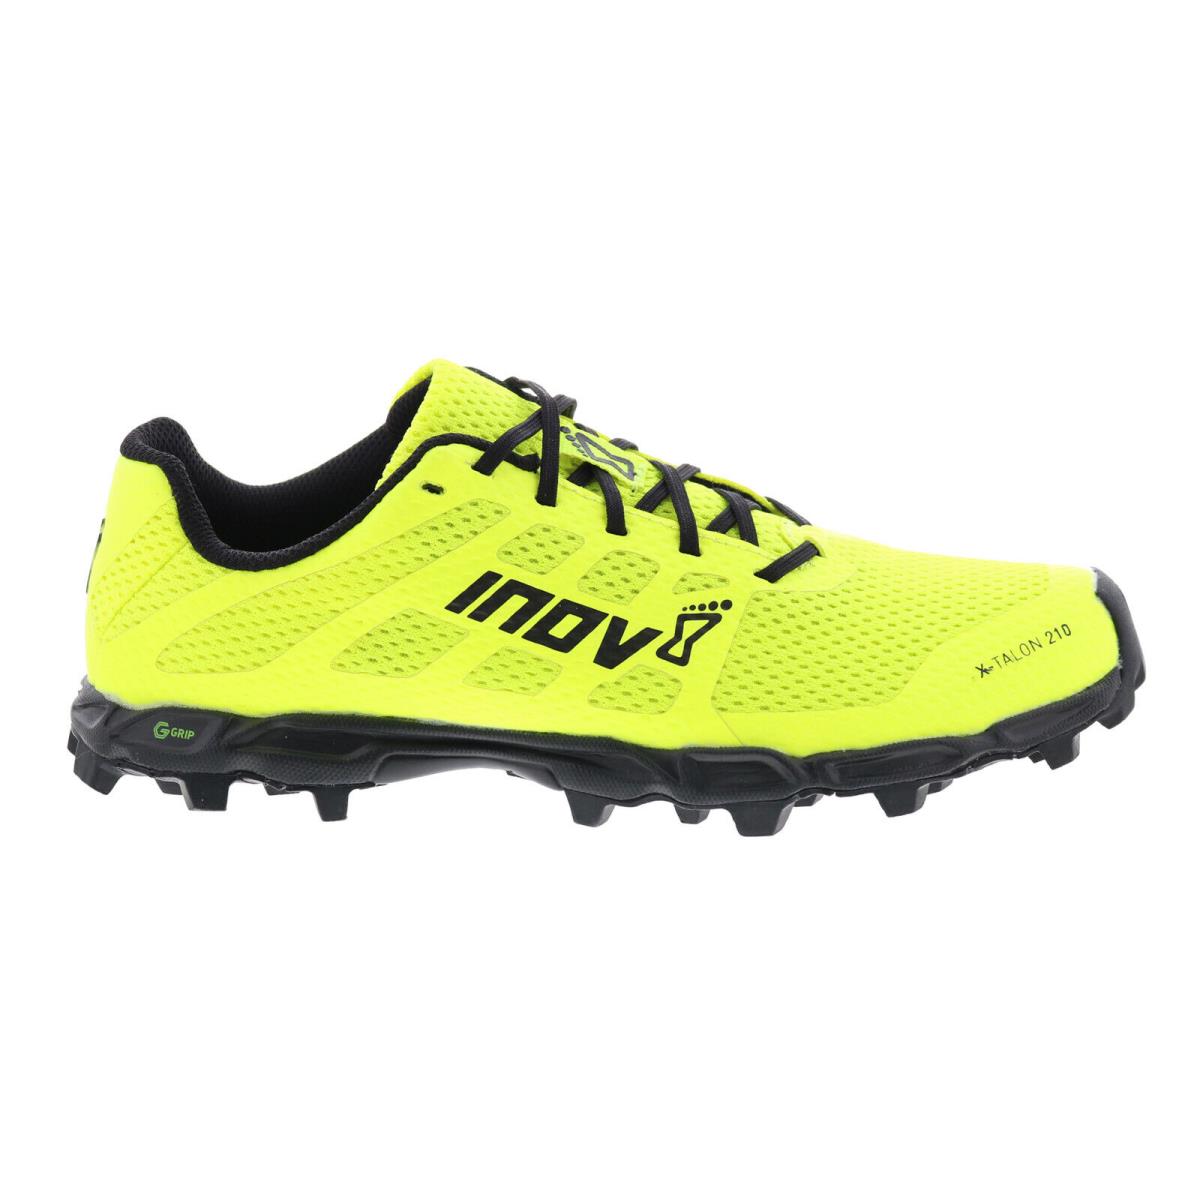 Inov-8 X-talon G 210 V2 000986-YWBK Womens Yellow Athletic Hiking Shoes